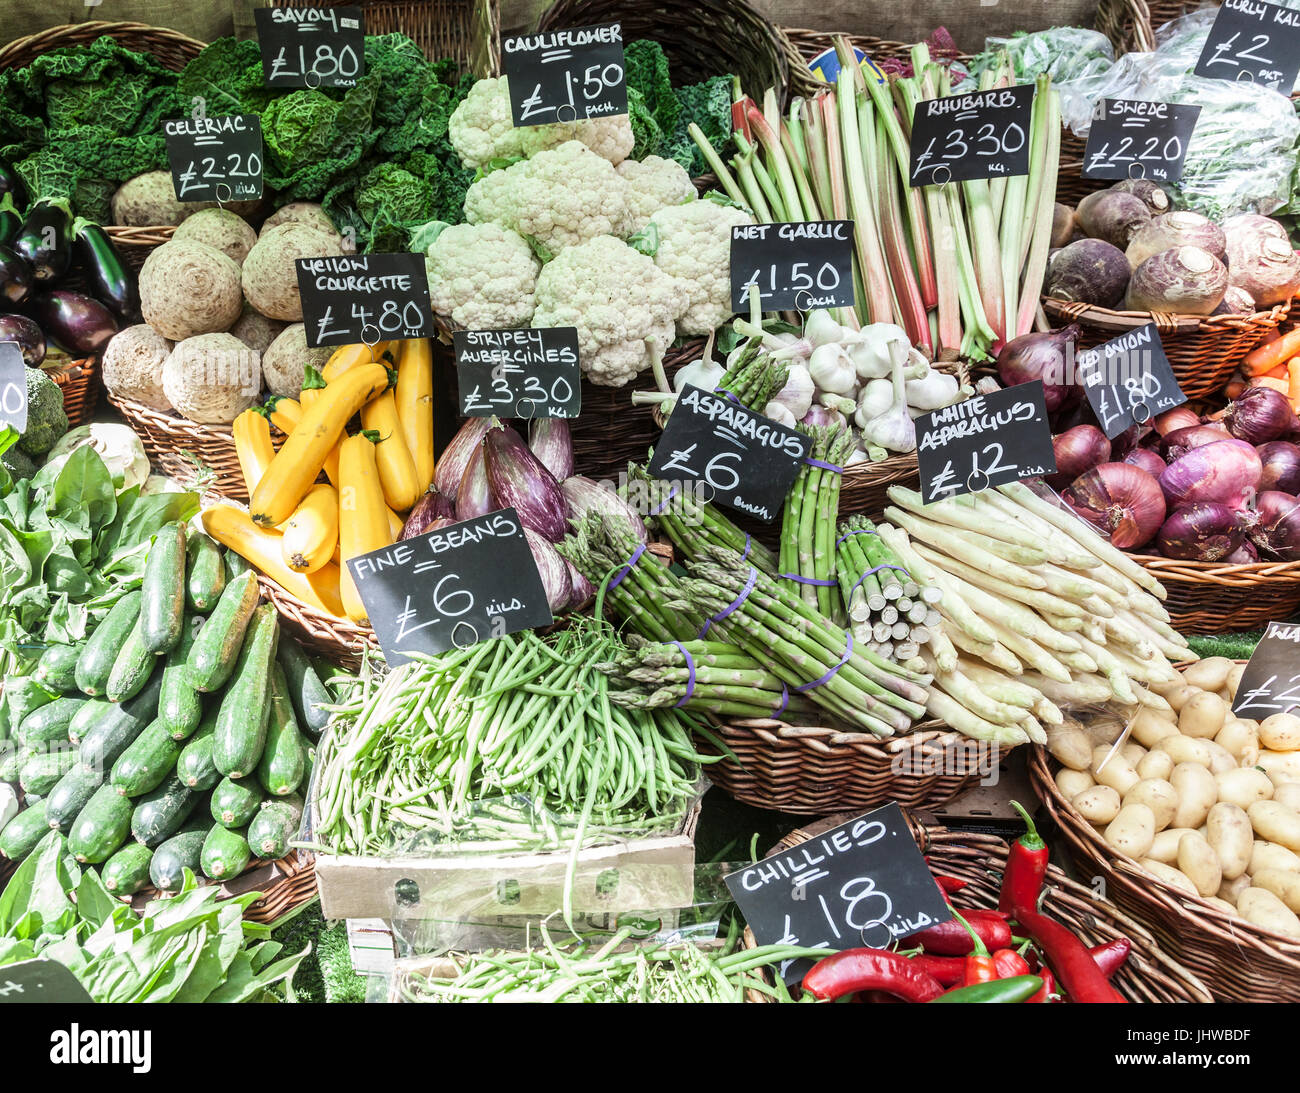 Gemüse-Stall im Borough Market, Southwark, London England. Nass stripey Auberginen, feinen Bohnen, Spargel, Savoy Kohl, Knoblauch, gelbe Zucchini Stockfoto